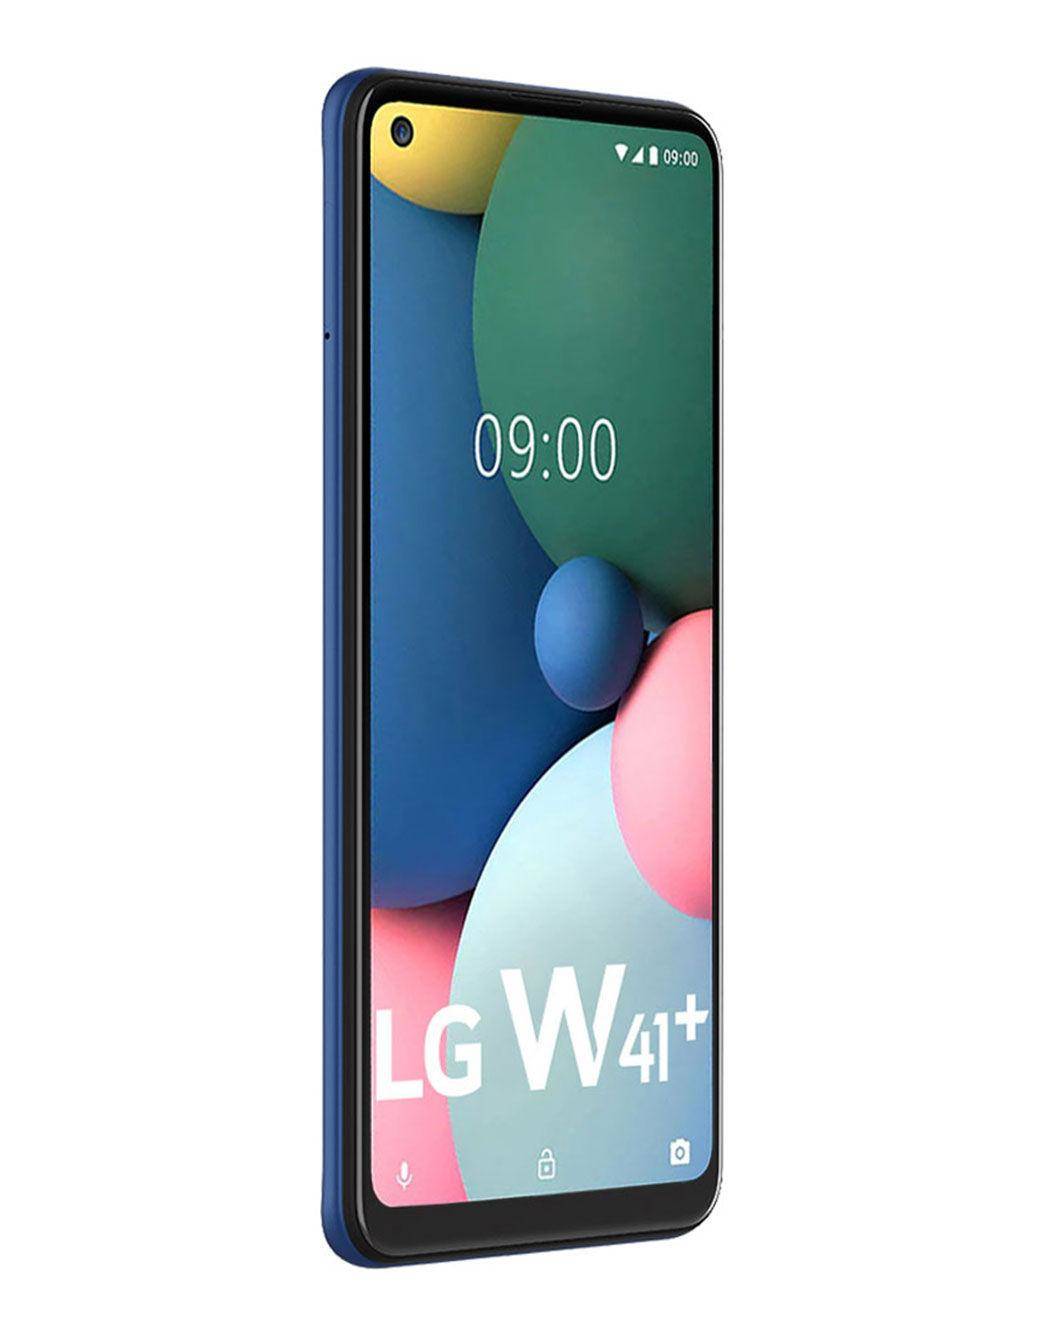 8 जीबी तक रैम के साथ LG W41, W41 + और W41 प्रो लॉन्च, कीमत जानिए